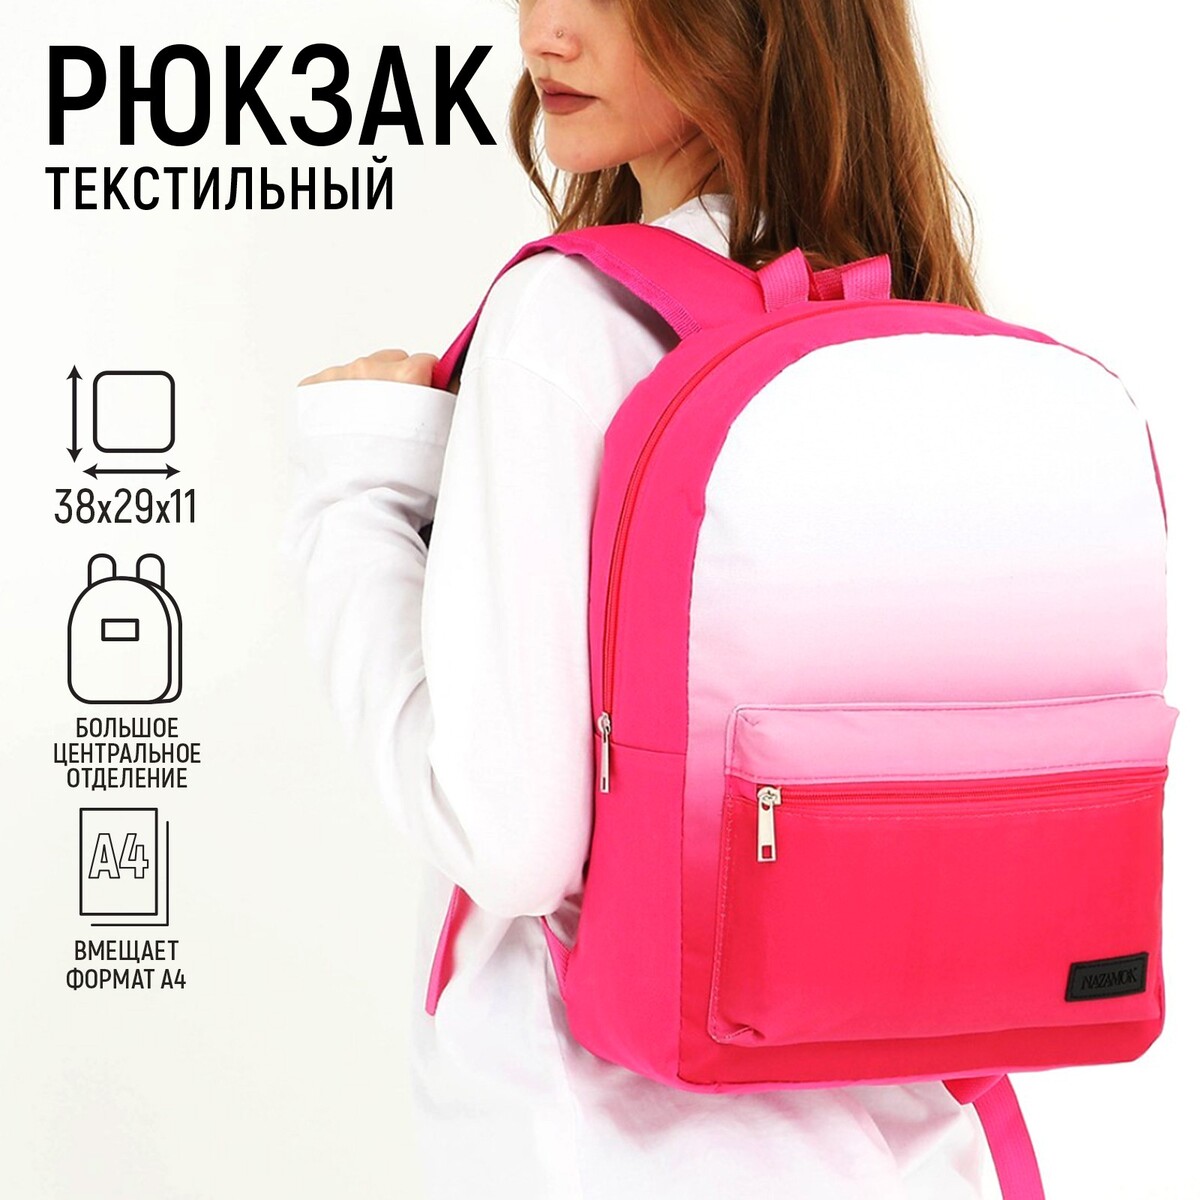 Рюкзак текстильный с белым градиентом, 38х29х11 см, 38 х цвет розовый розовый, отдел на молнии, цвет красный рюкзак текстильный с белым градиентом 38х29х11 см 38 х отдел на молнии красный